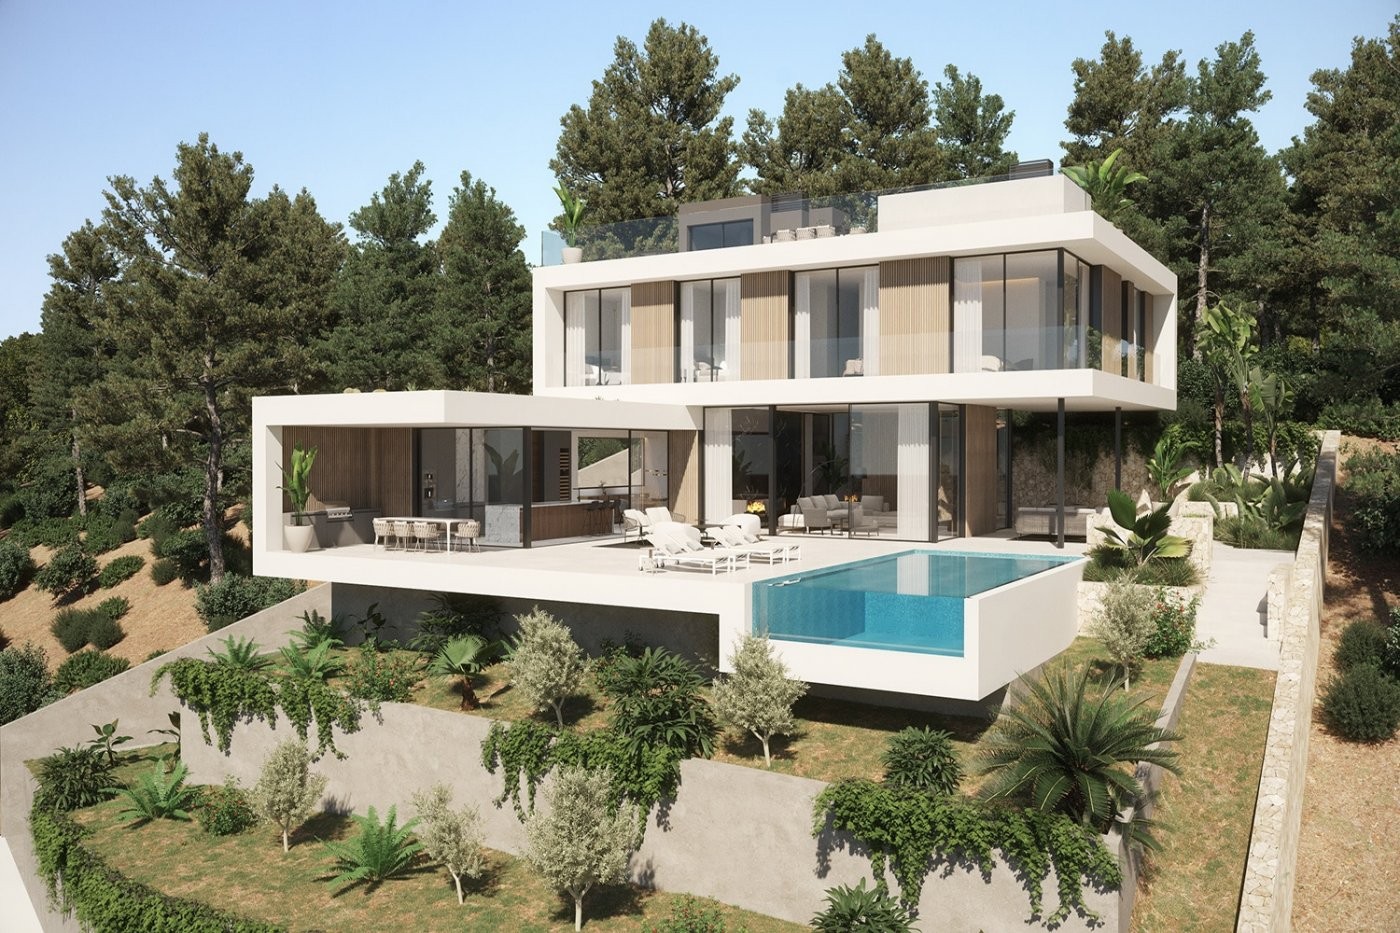 Villa in innovativem modernen Design mit großen Terrassenflächen und Meerblick in Cala Llamp